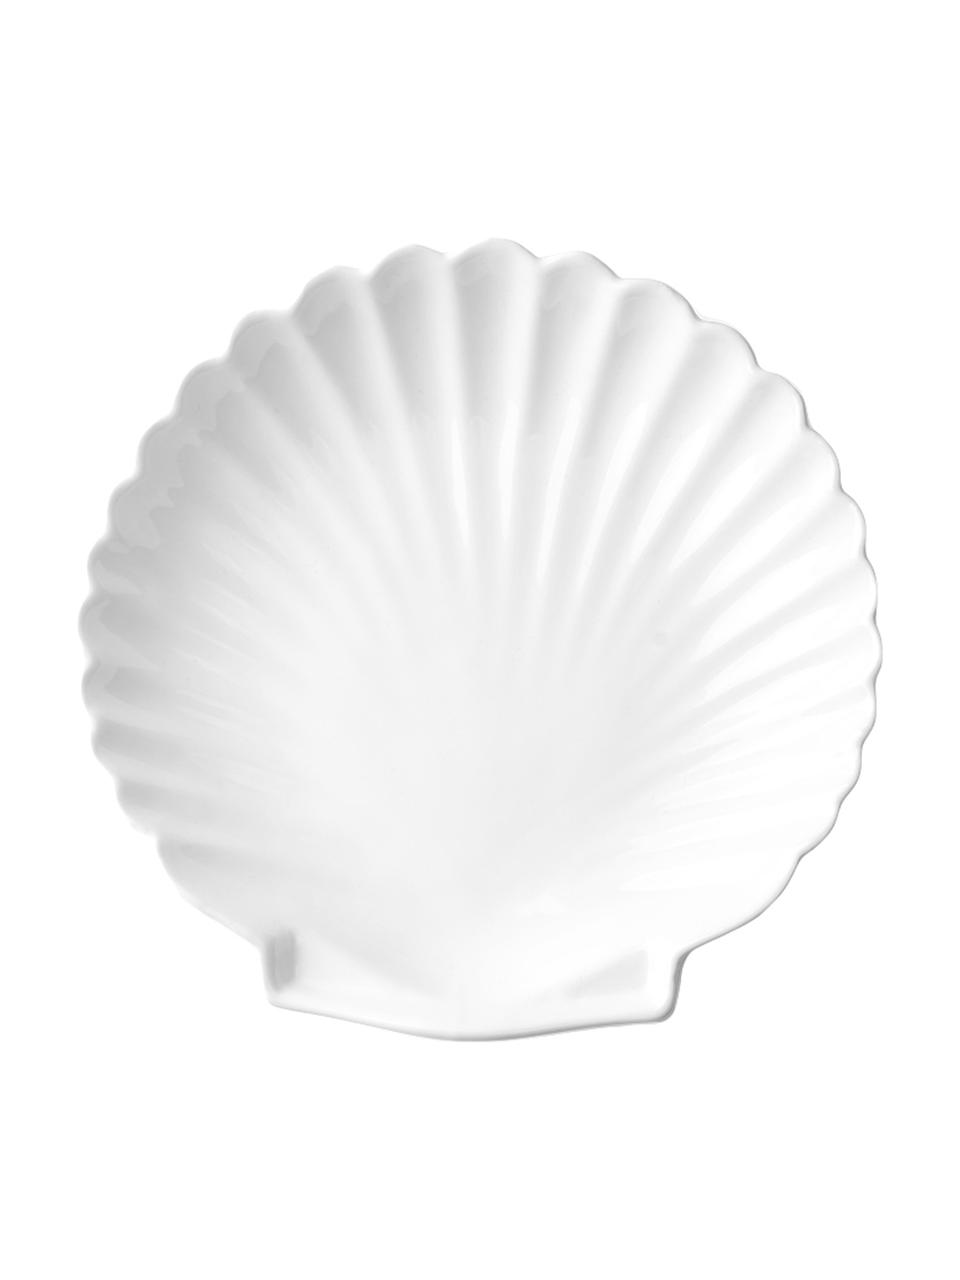 Teller Shell in Muschelform, 2 Stück, Keramik, Weiss, Ø 20 cm